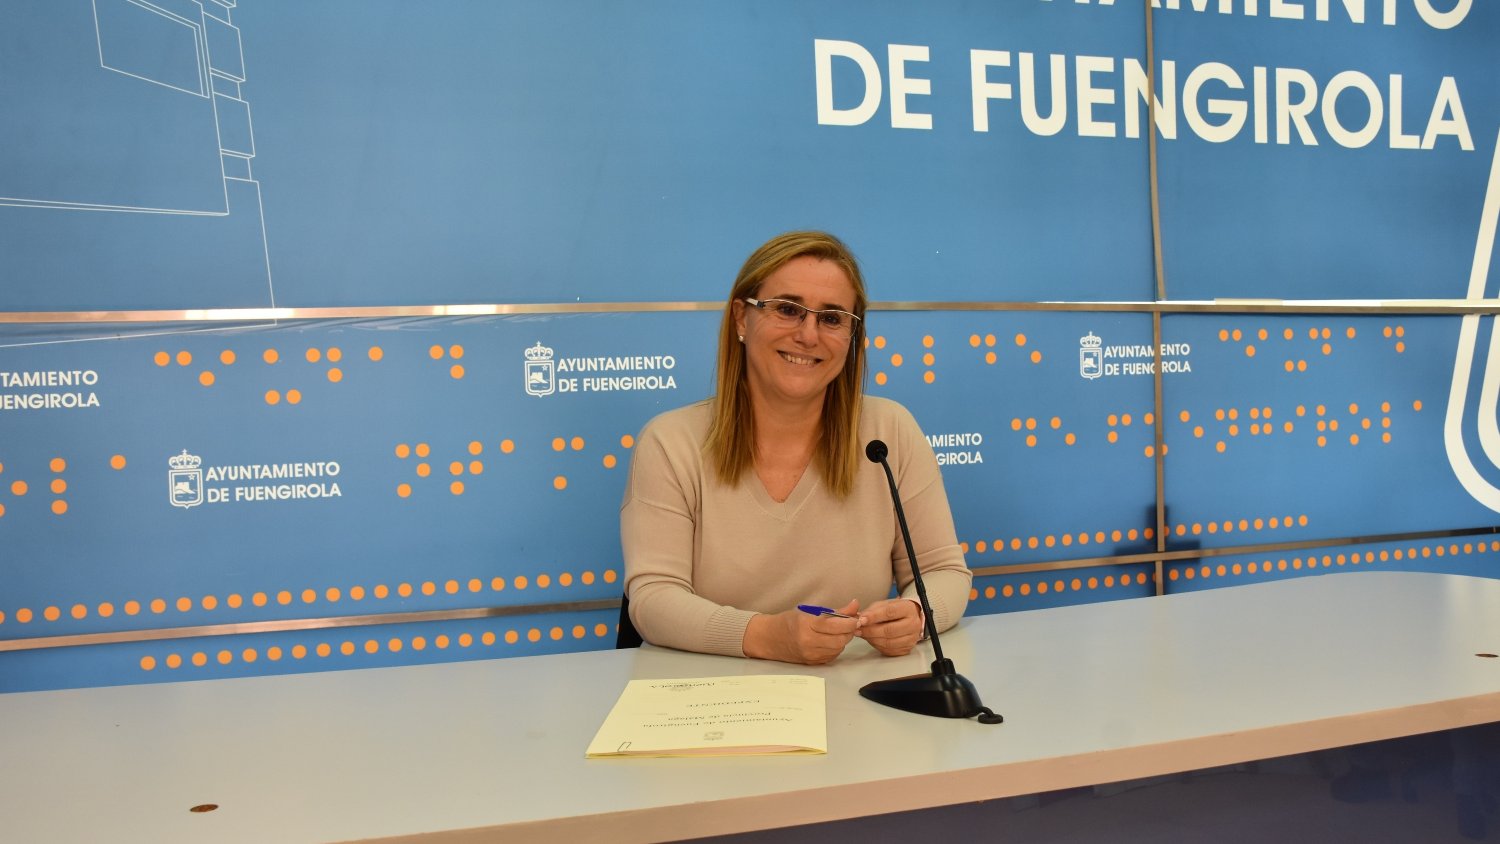 Fuengirola dedica en 2016 más de 14 millones de euros al impulso de nuevos proyectos